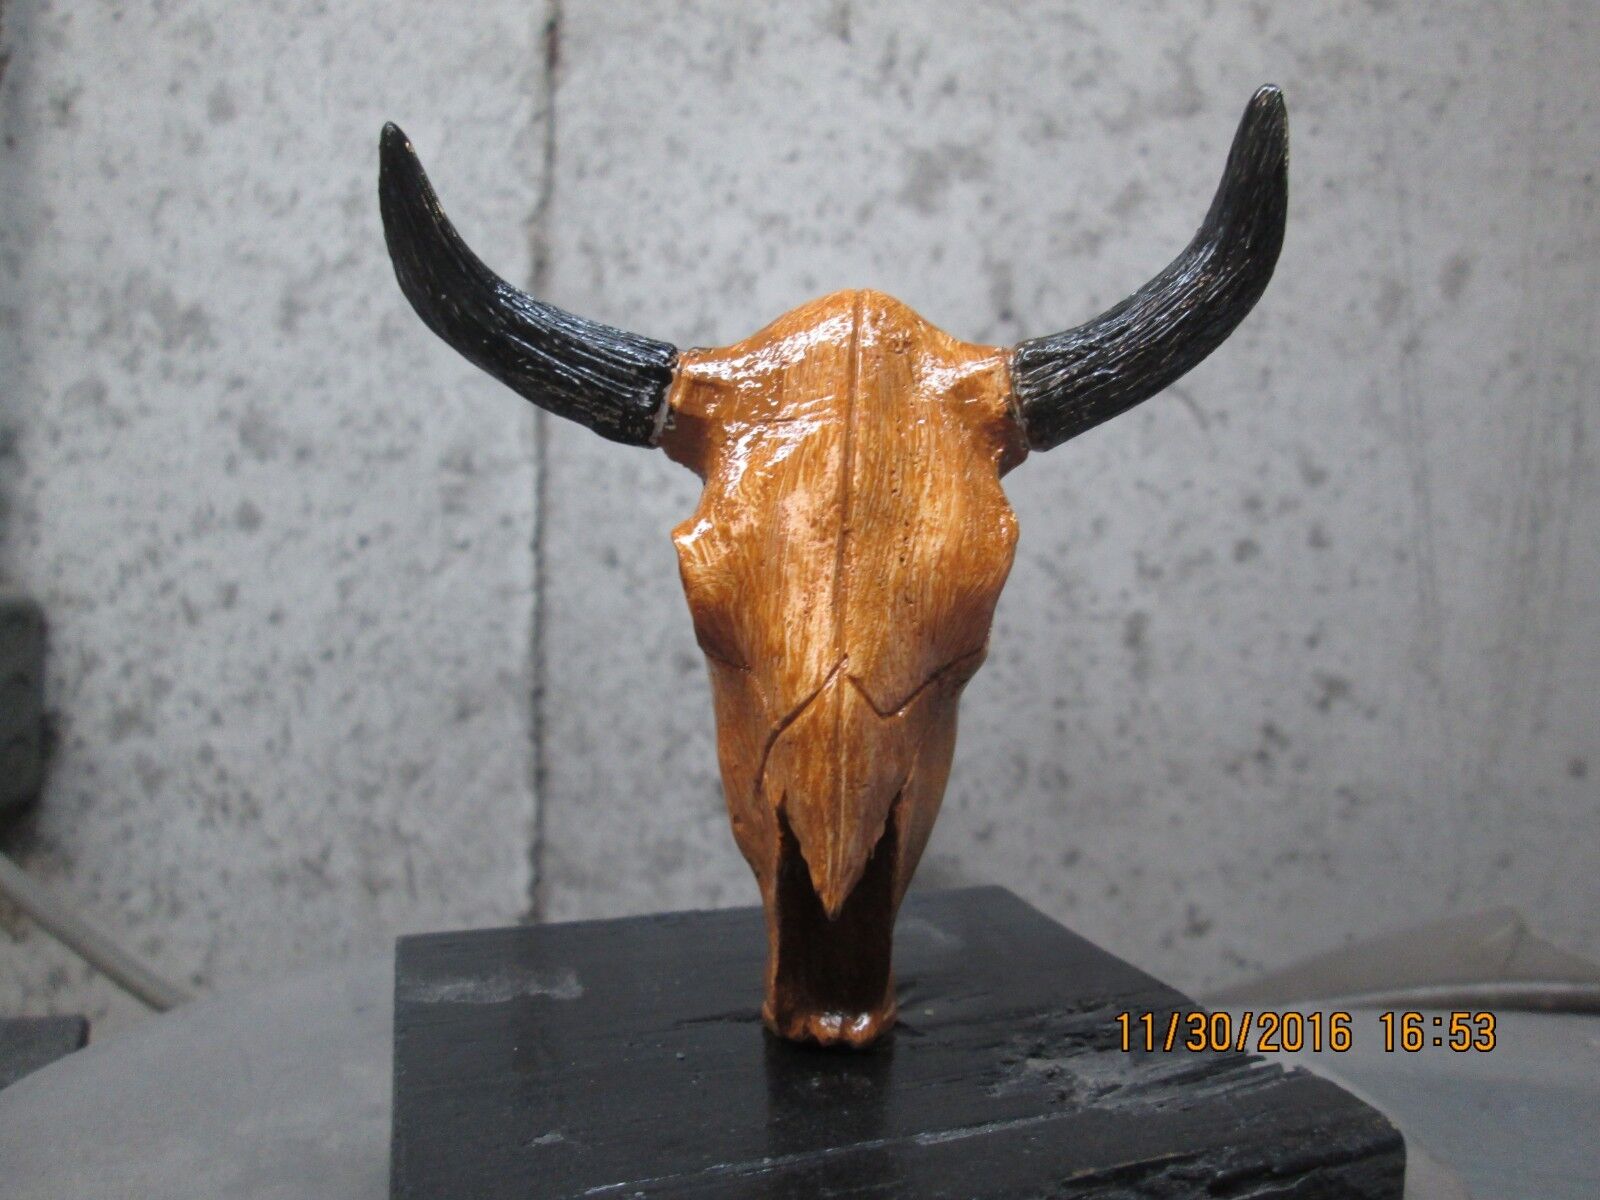  texas longhorn skull  hand painted  ratrod hotrod car hood ornament 